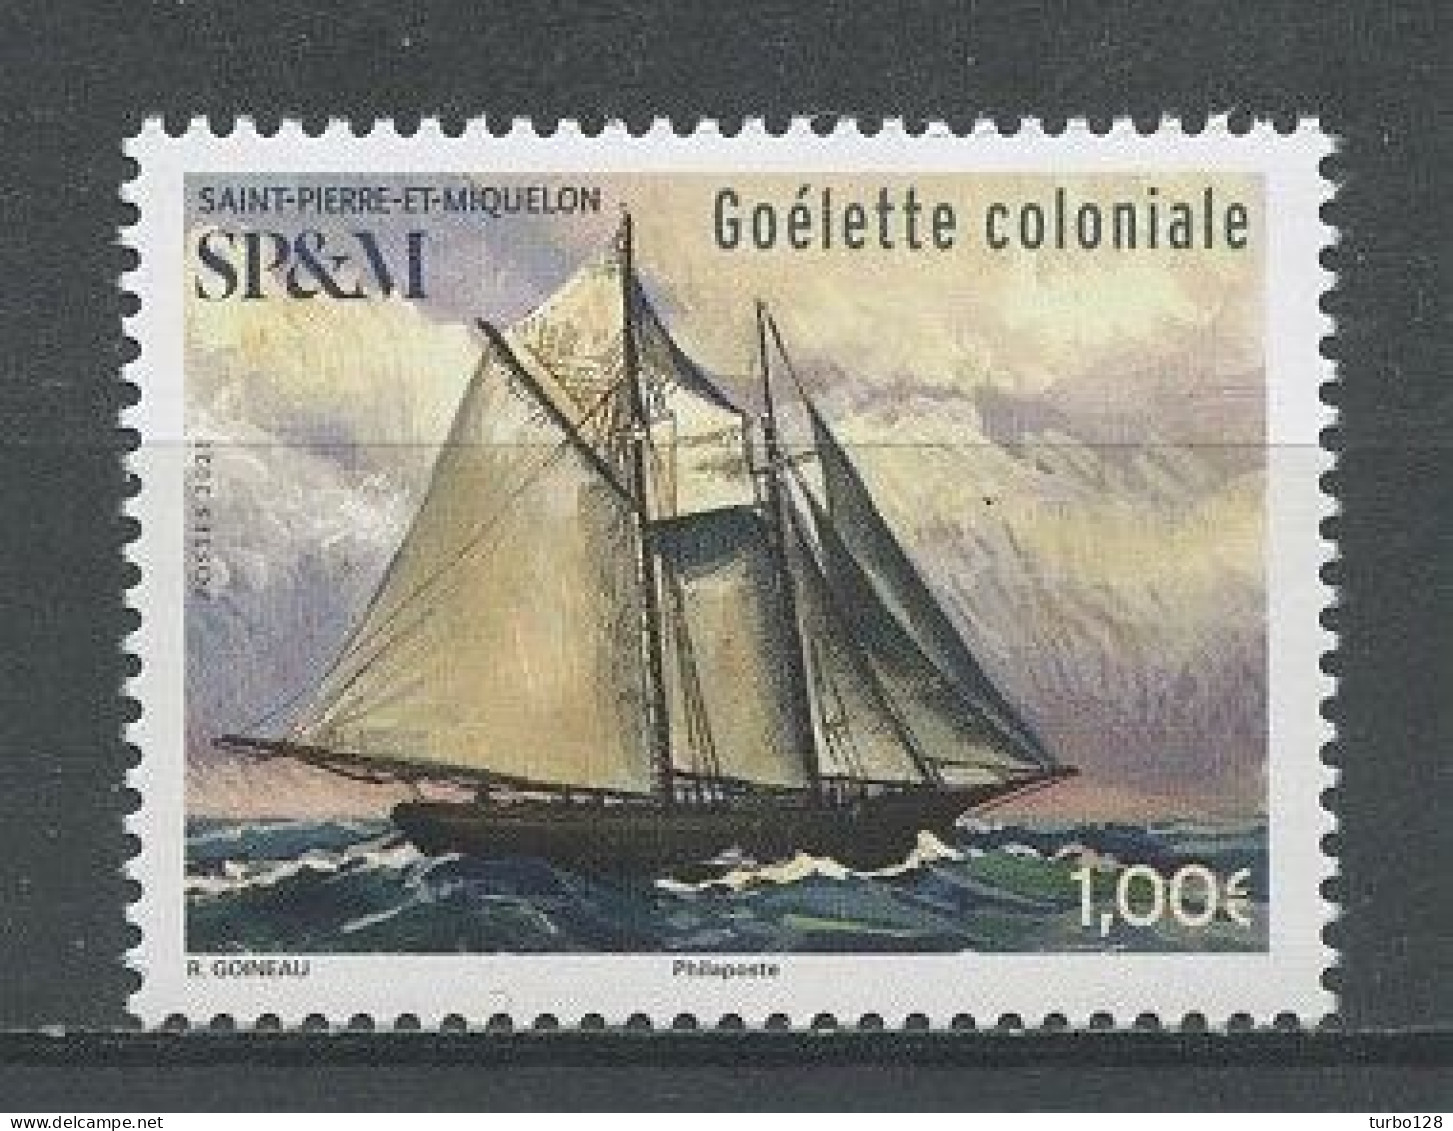 SPM Miquelon 2021 N° 1259 ** Neuf MNH Superbe Bateaux Voiliers Goélette Coloniale Vieux Gréements Transport Maritime - Unused Stamps